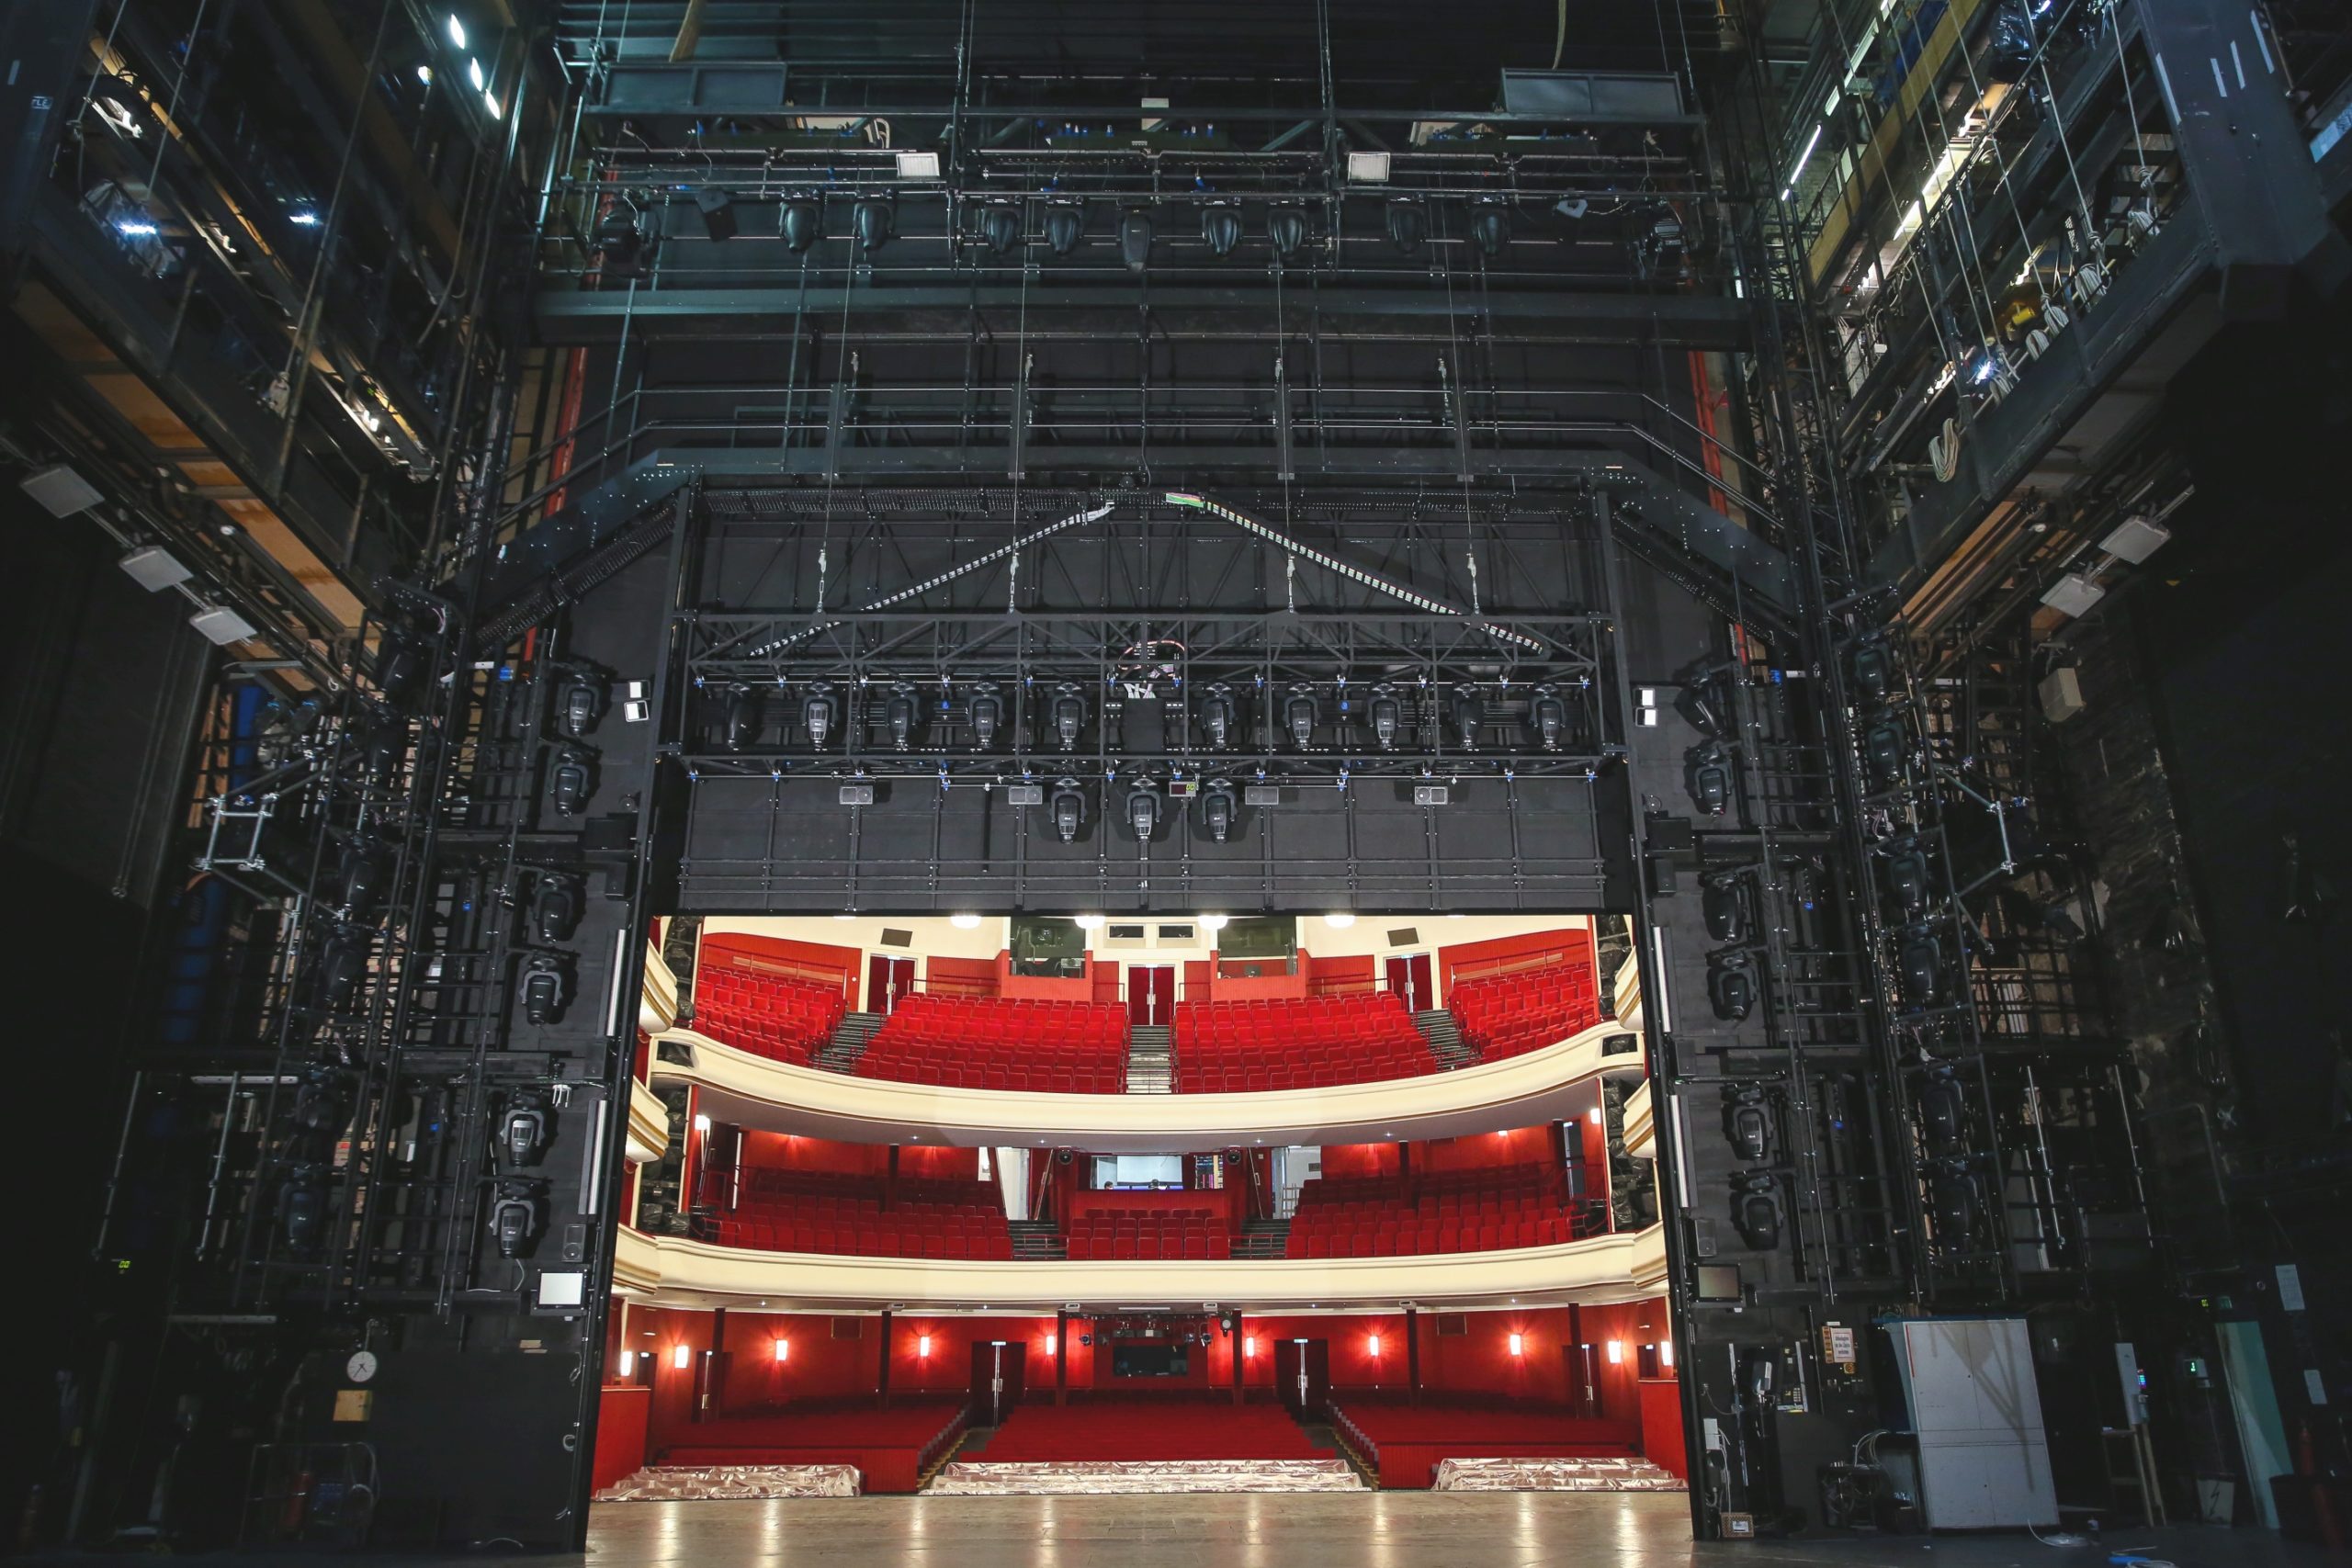 Die Bühne der Volksoper Wien von hinten gesehen. Man sieht das sogenannte Portal, in schwarz gehalten, in dem Beleuchtungsteile, Hubzüge, etc. verbaut sind. In der Mitte sieht man in den Besucherraum mit seinen roten samtbezogenen Sitzen. 